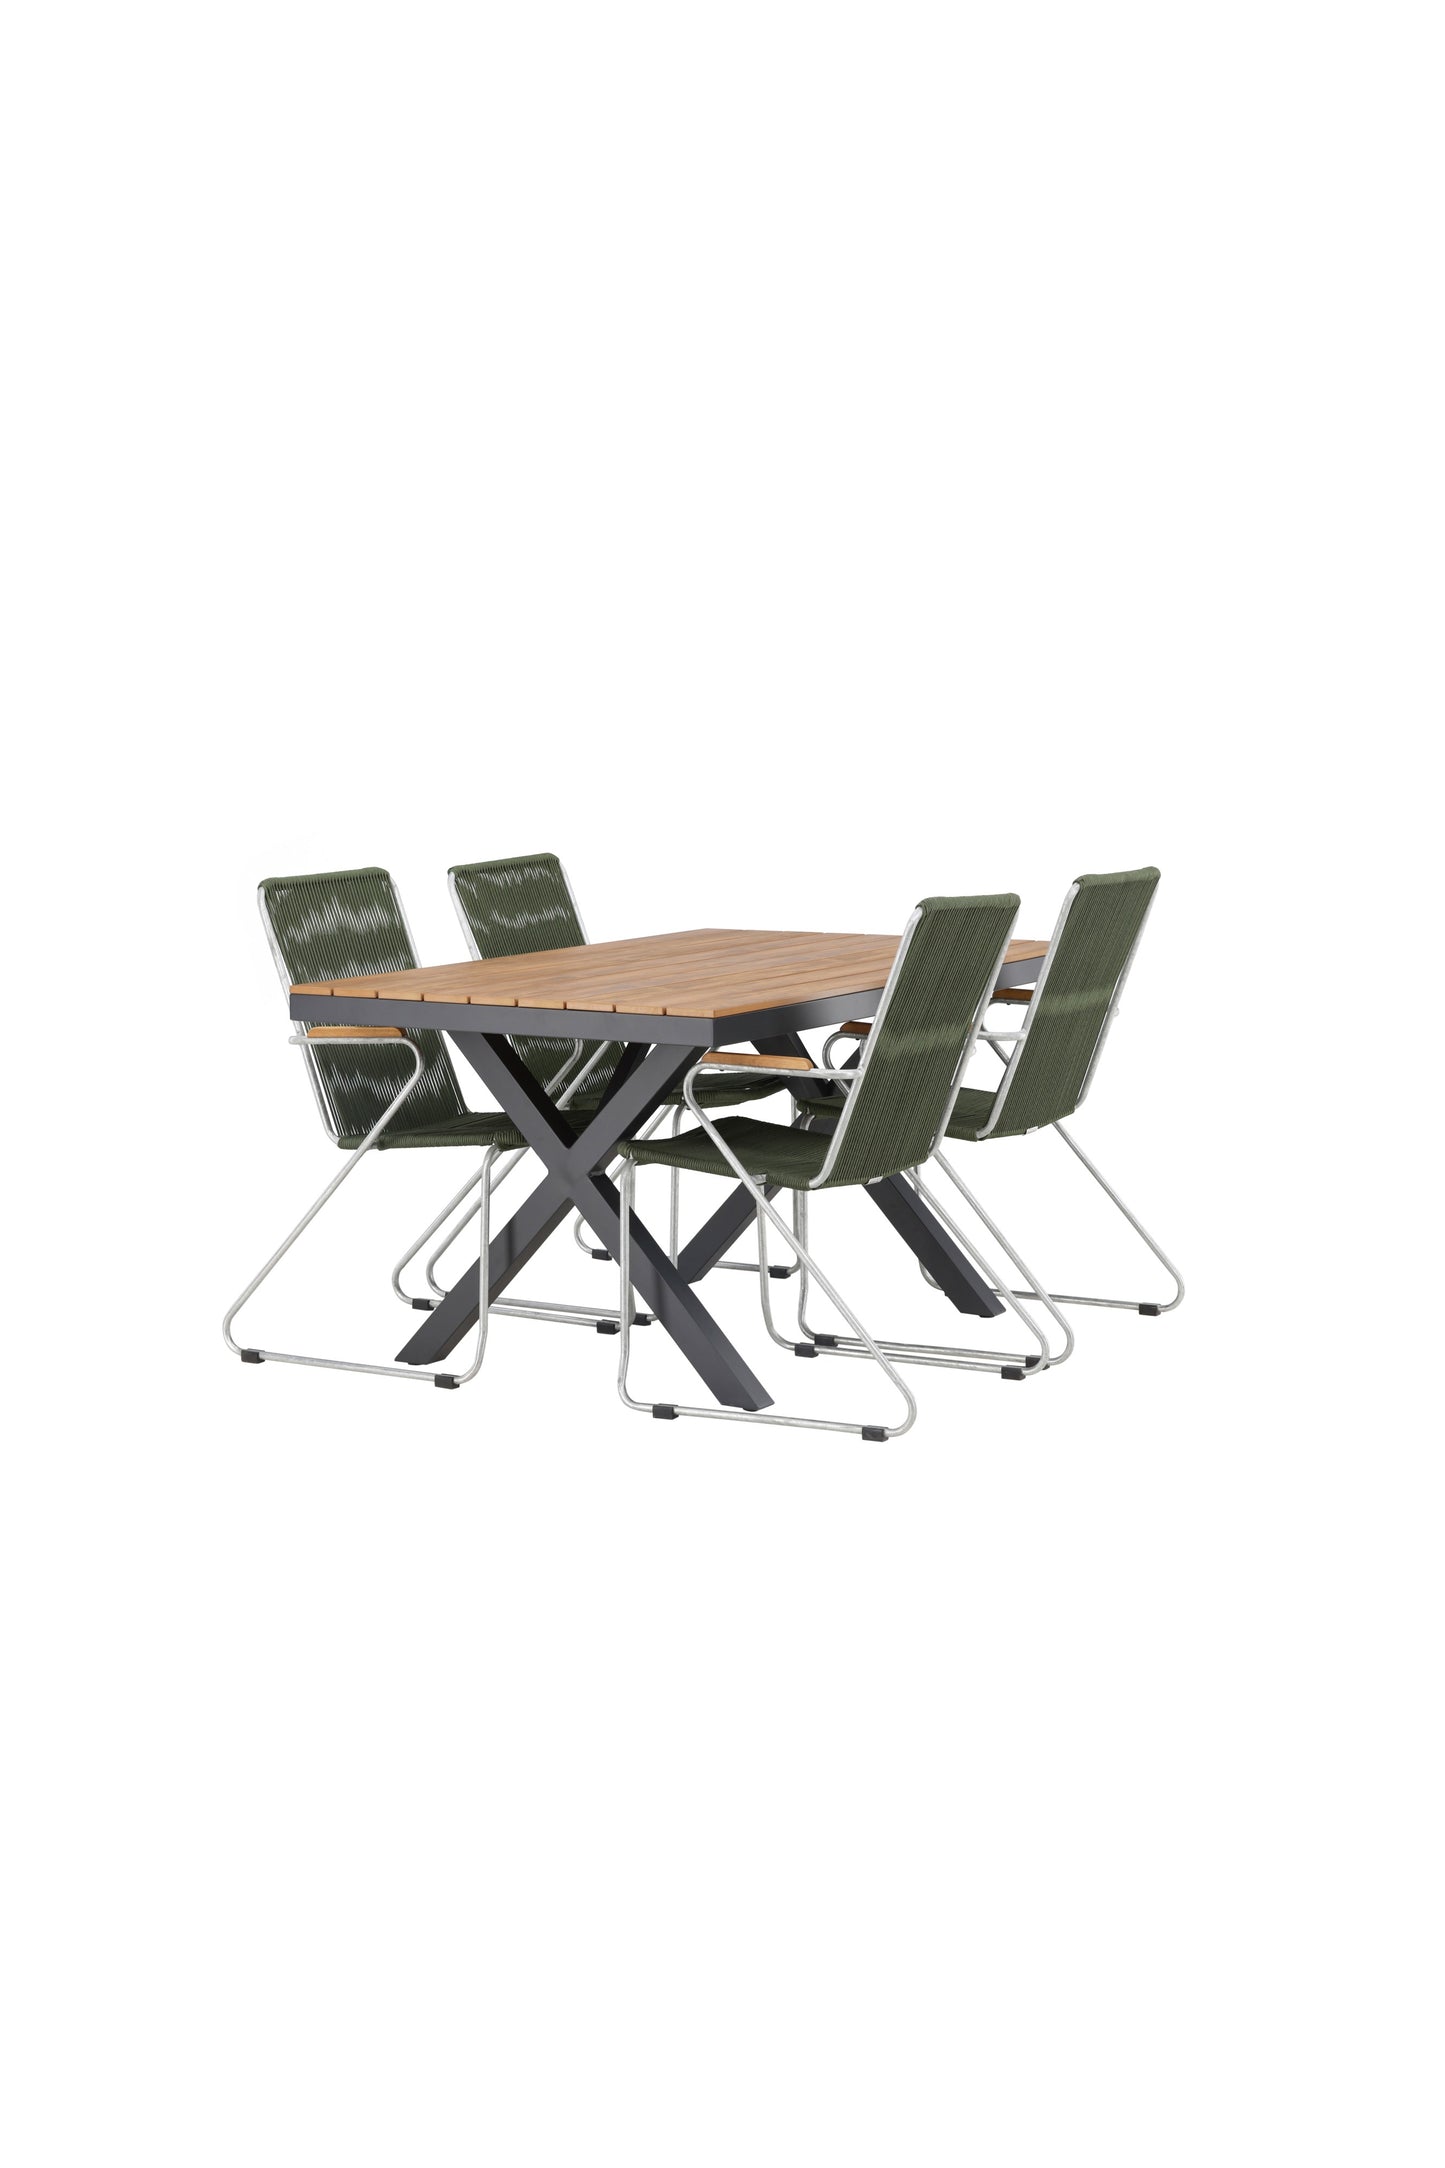 Garcia - Spisebord, Aluminium - Sort / Rektangulær 90*150* + Bois stol Stål - Sølv / Grønt Reb